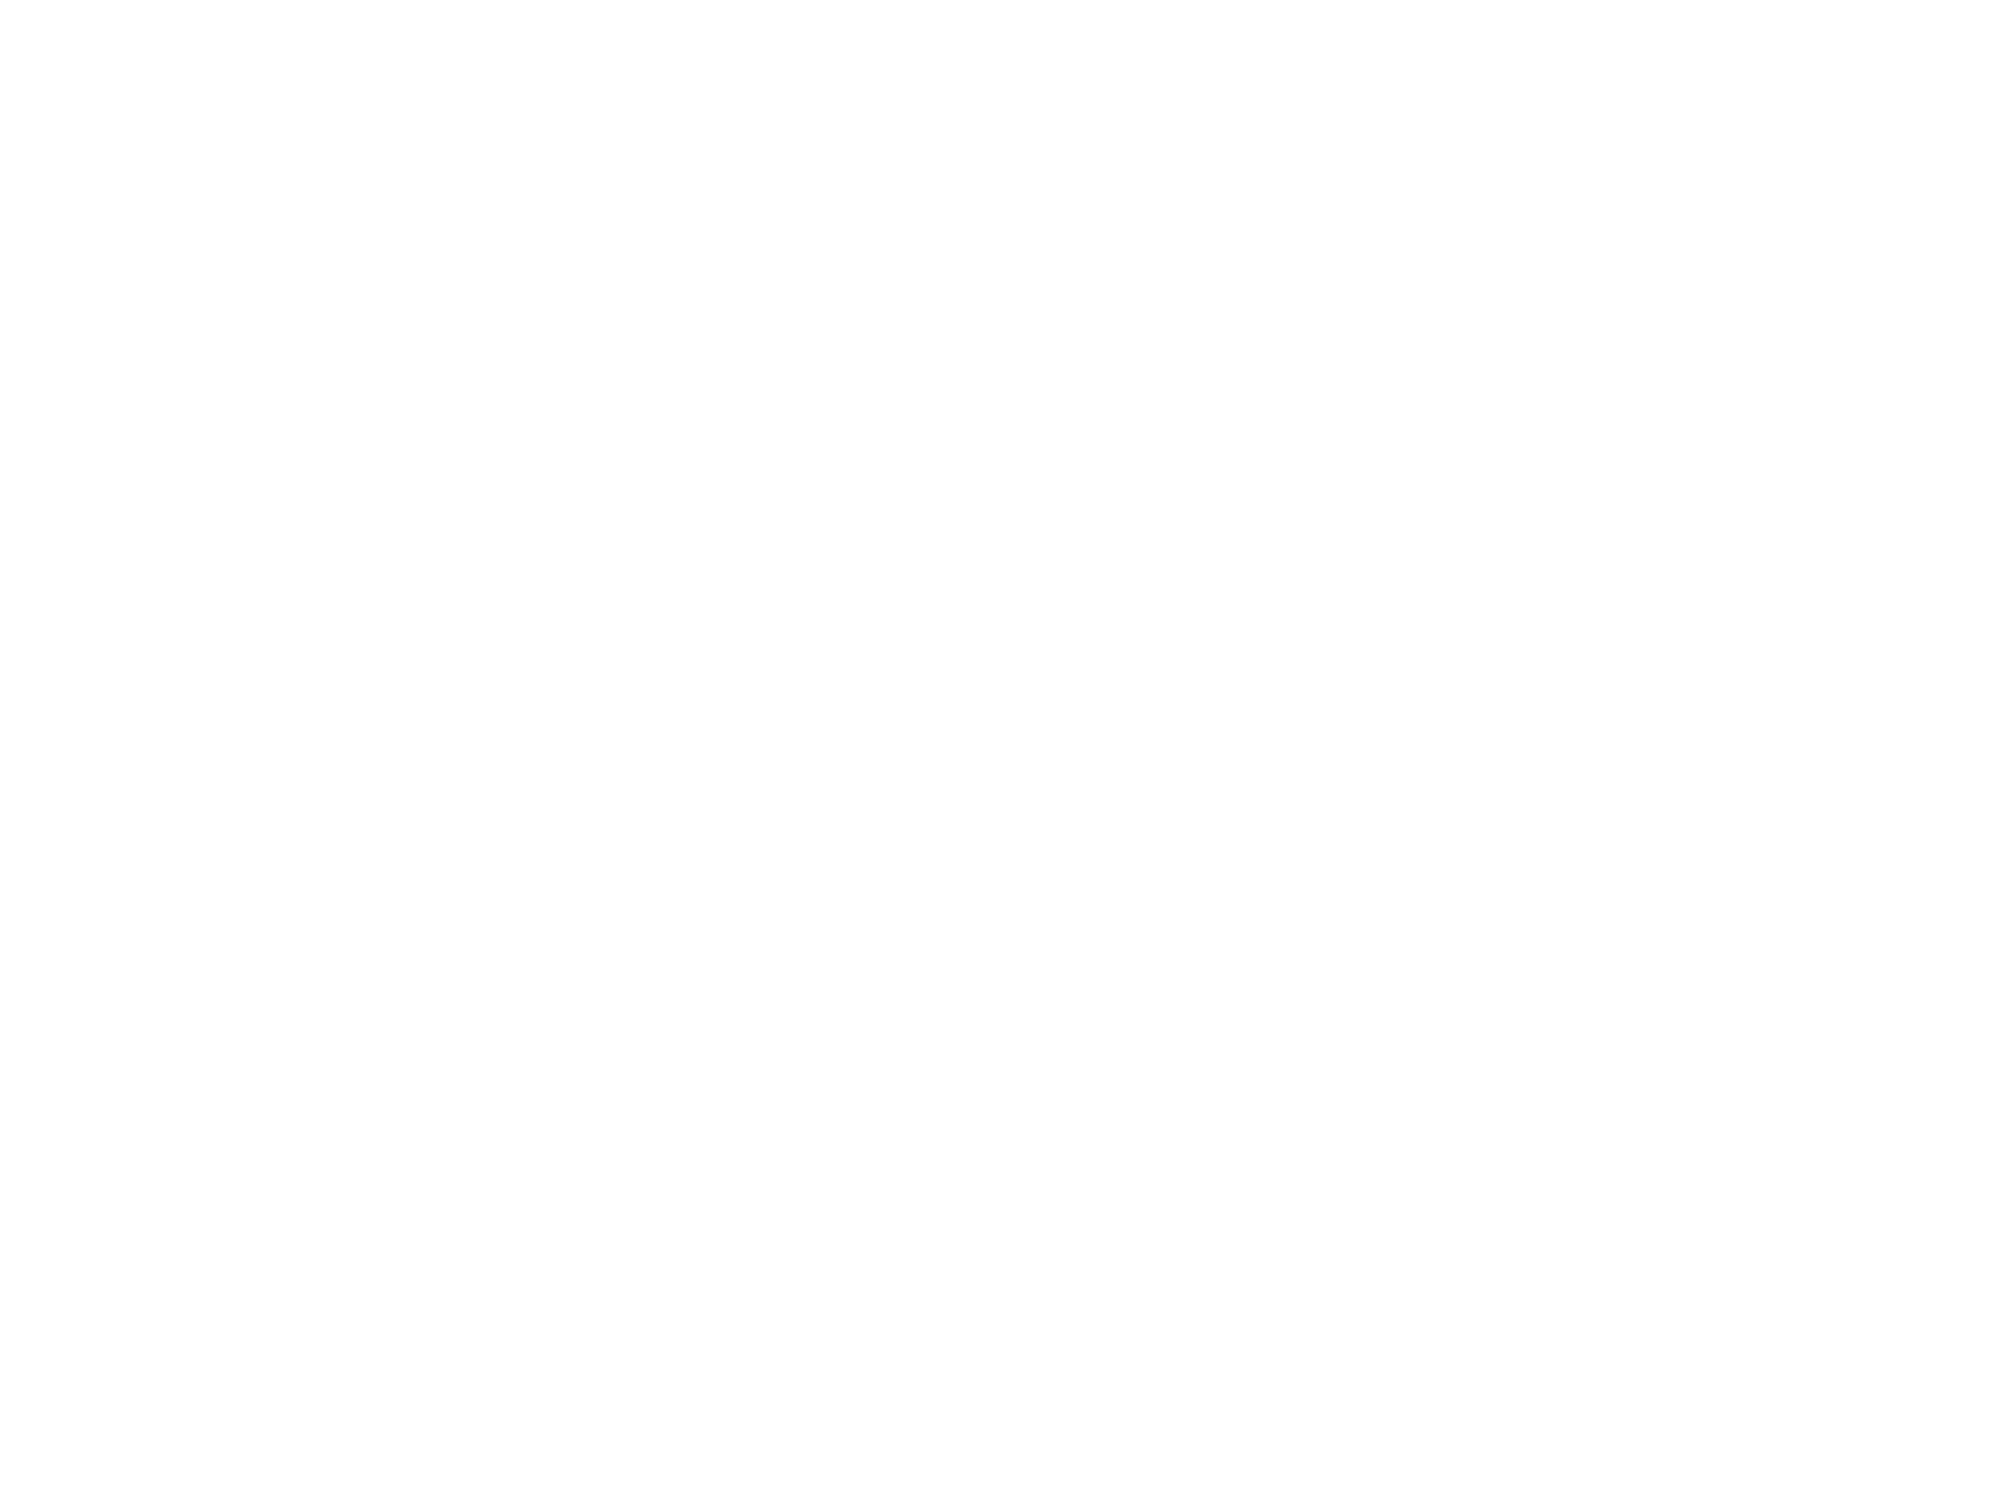 Lind-Bohanon logo set: white logo